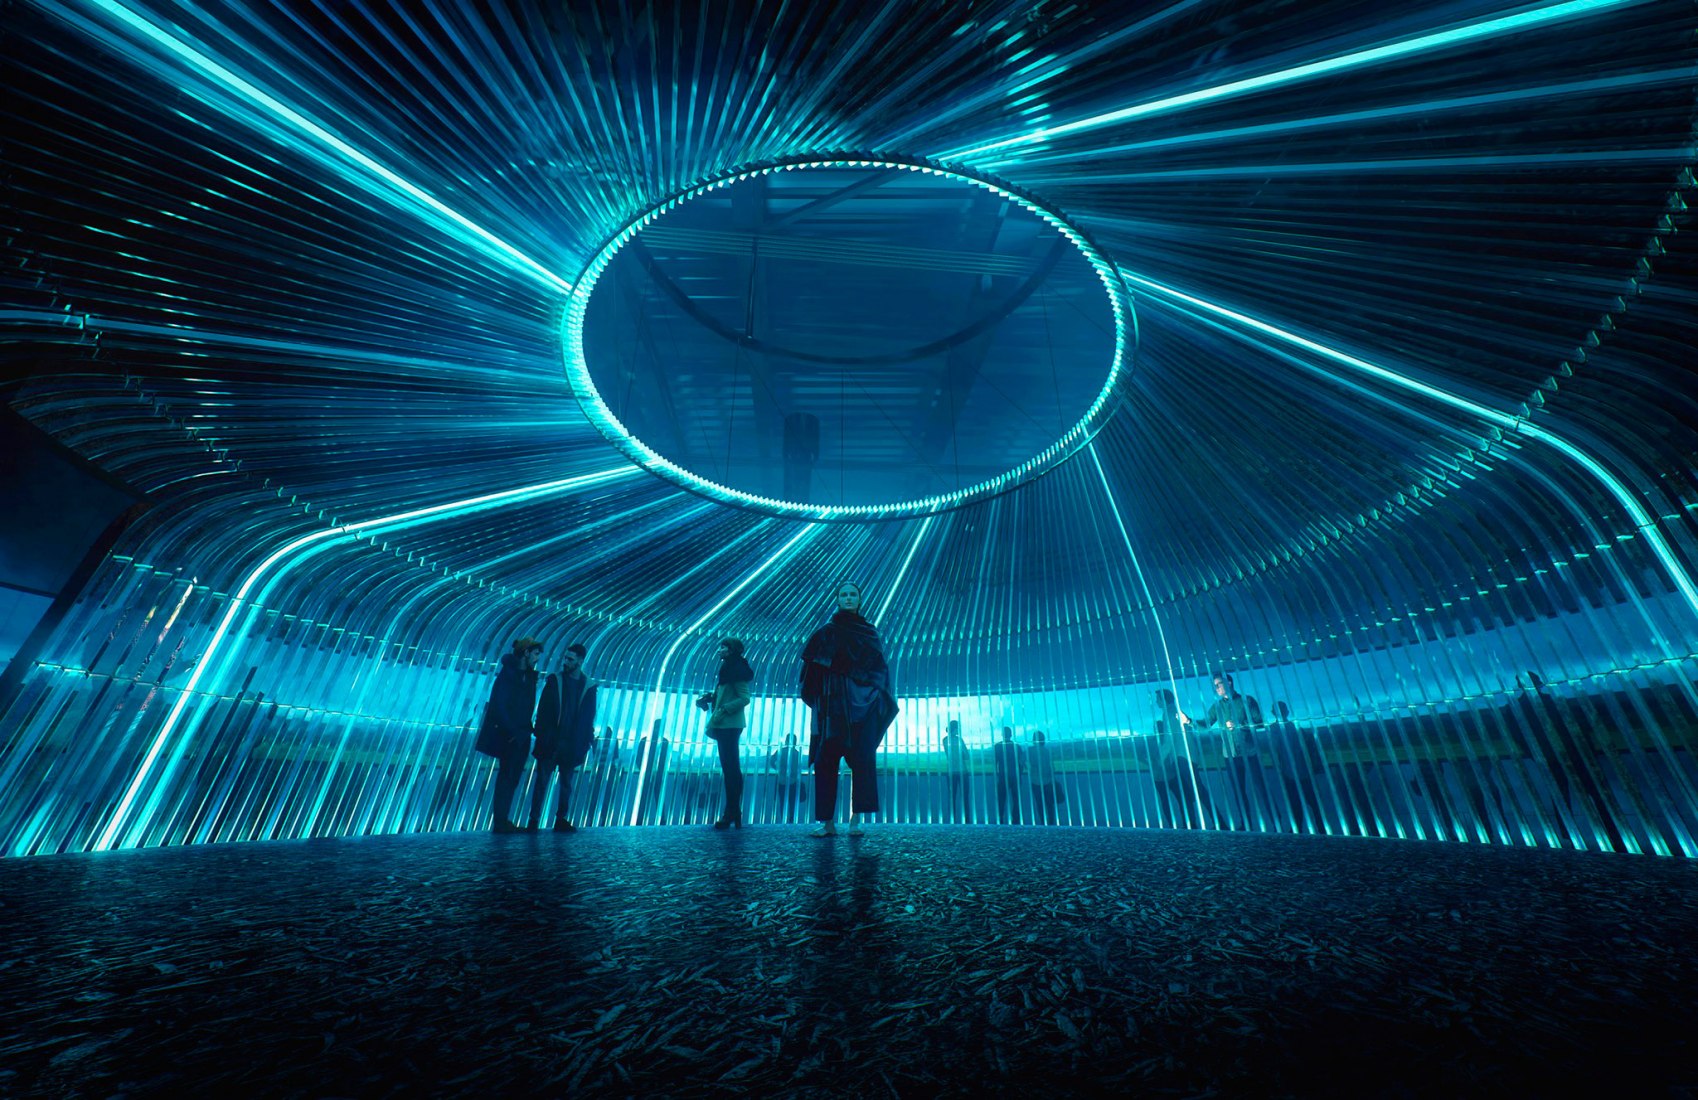 Visualización. Brian Eno compondrá la banda sonora del Reino Unido en la Expo Astana 2017. Imagen cortesía del Departamento de Comercio Internacional de RU